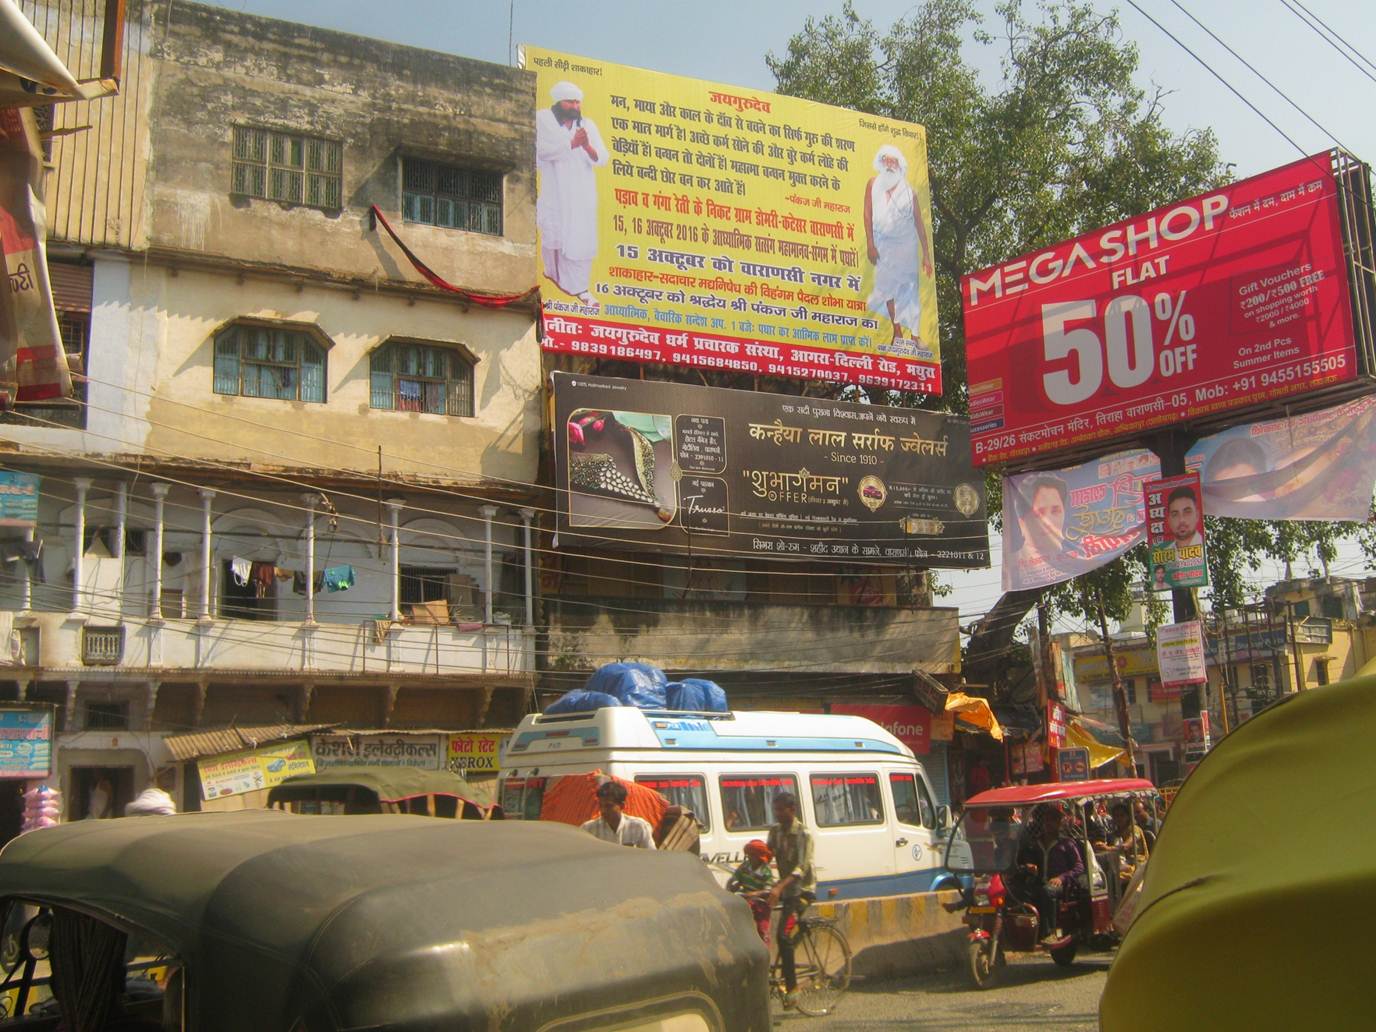 Girzaghar, Varanasi